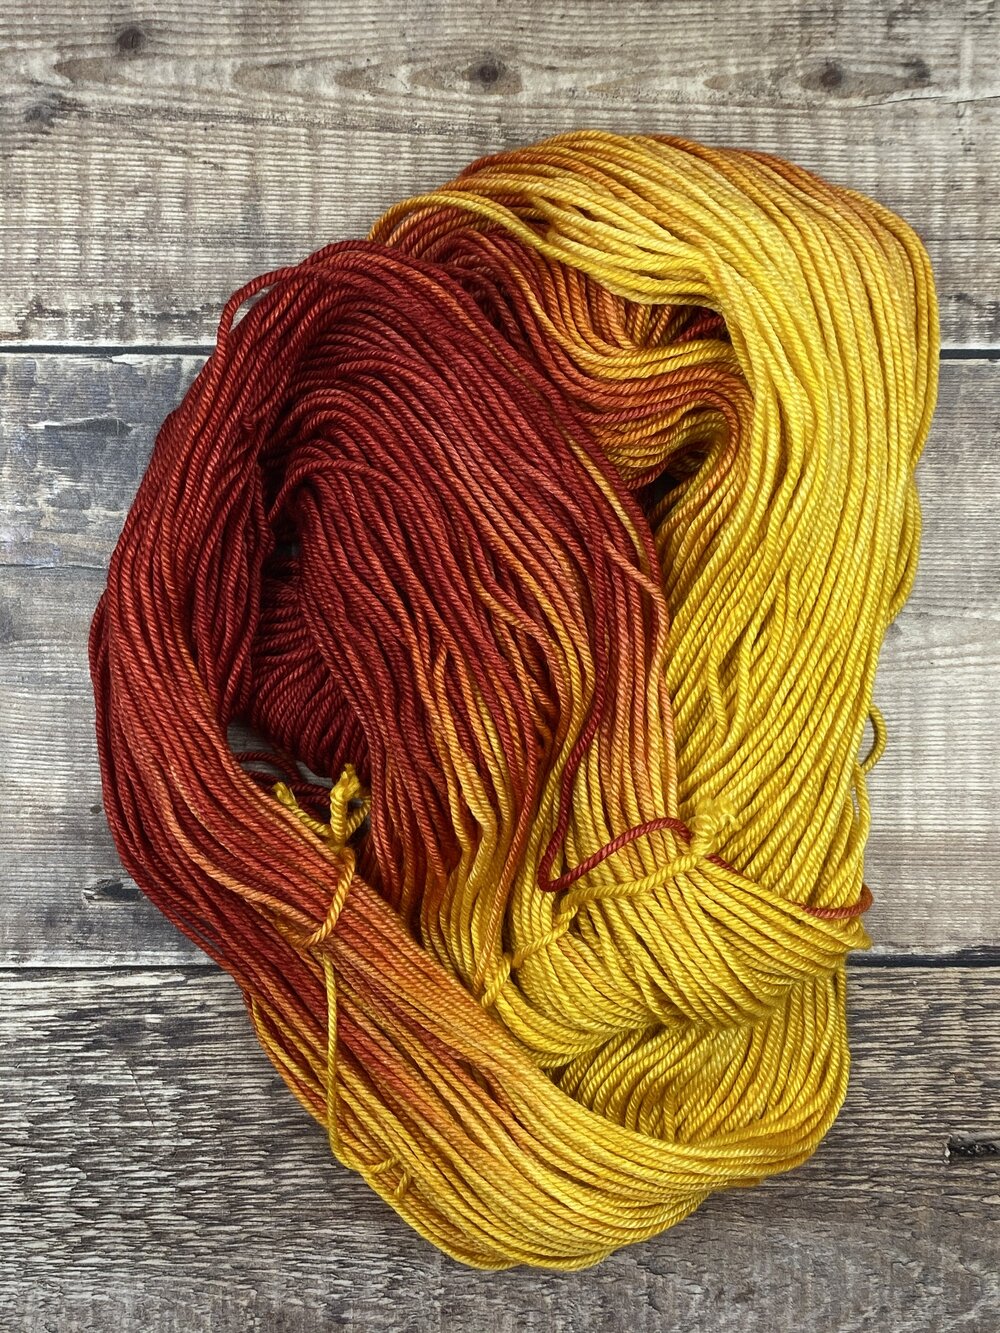 yellow orange and red silk merino wool hand dyed yarn